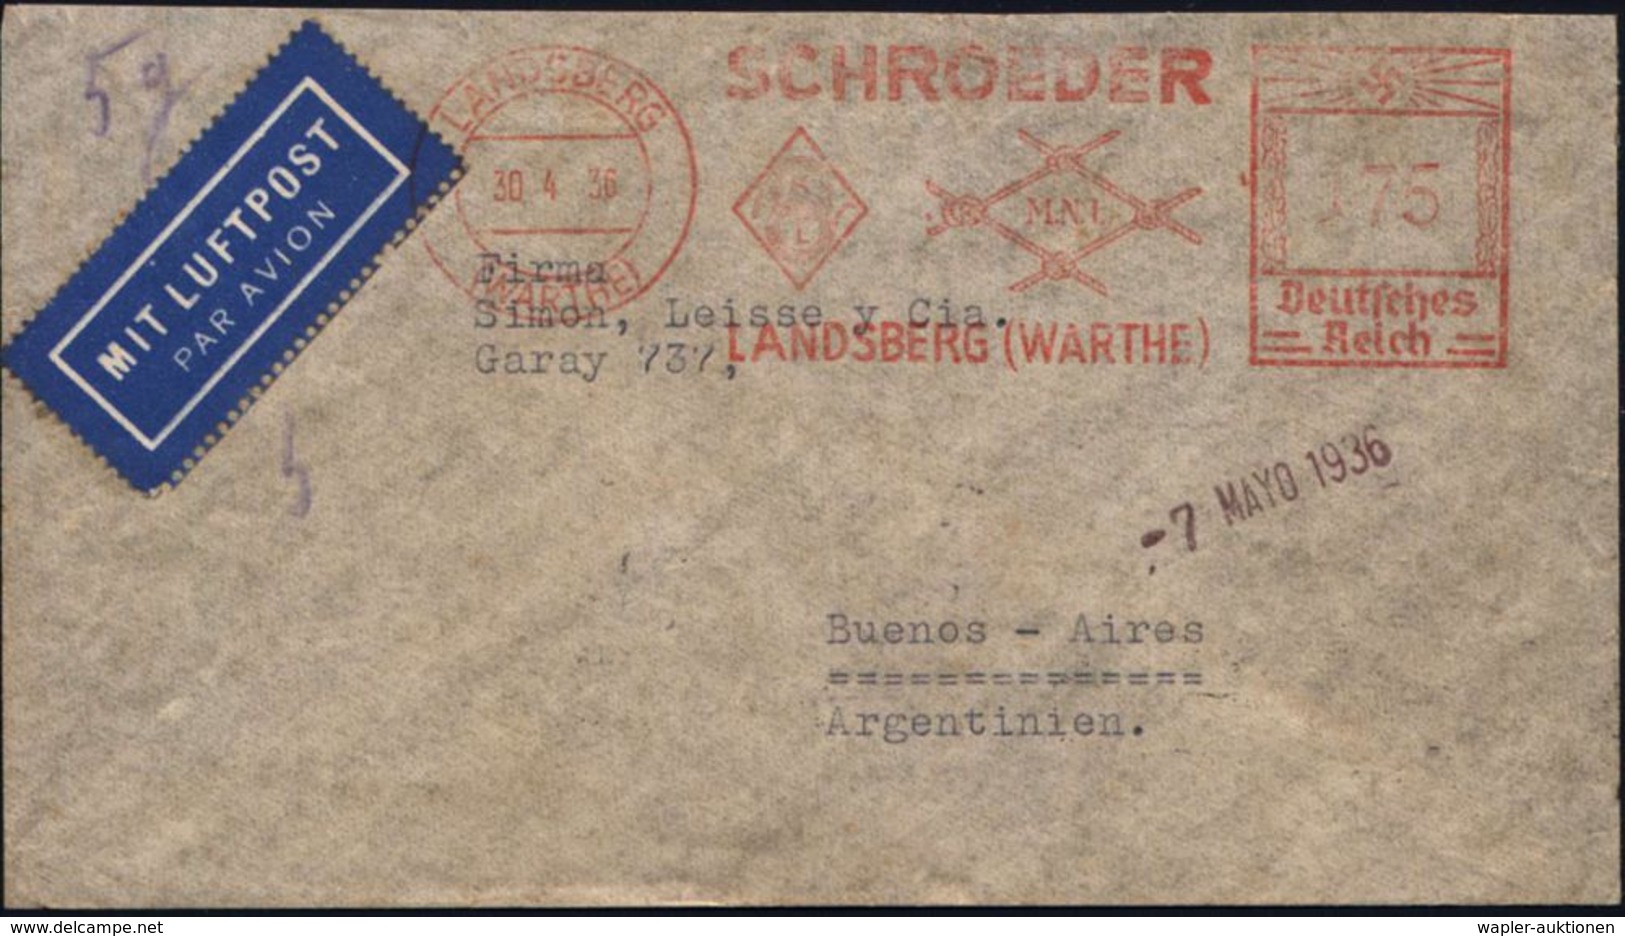 LANDSBERG/ (WARTHE)/ SCHROEDER.. 1938 (30.4.) AFS 175 Pf. Auf Firmen-Bf.: Kabelfabrik Landsberg.., Übersee-Flp.-Bf. = Fr - Altri (Aria)